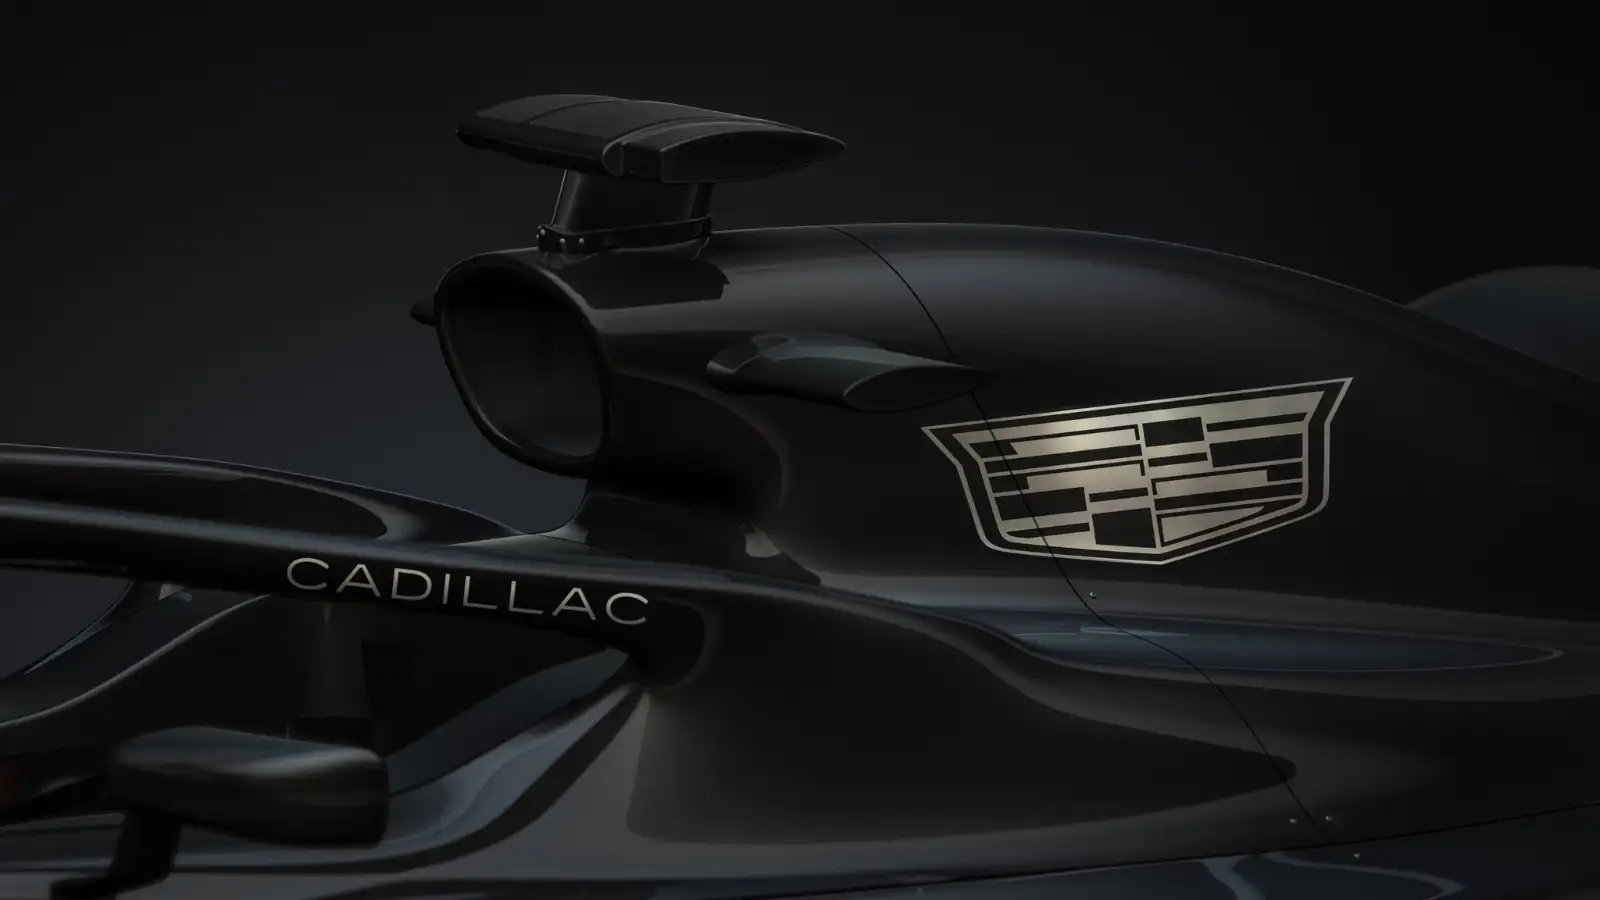 Cadillac F1 logo